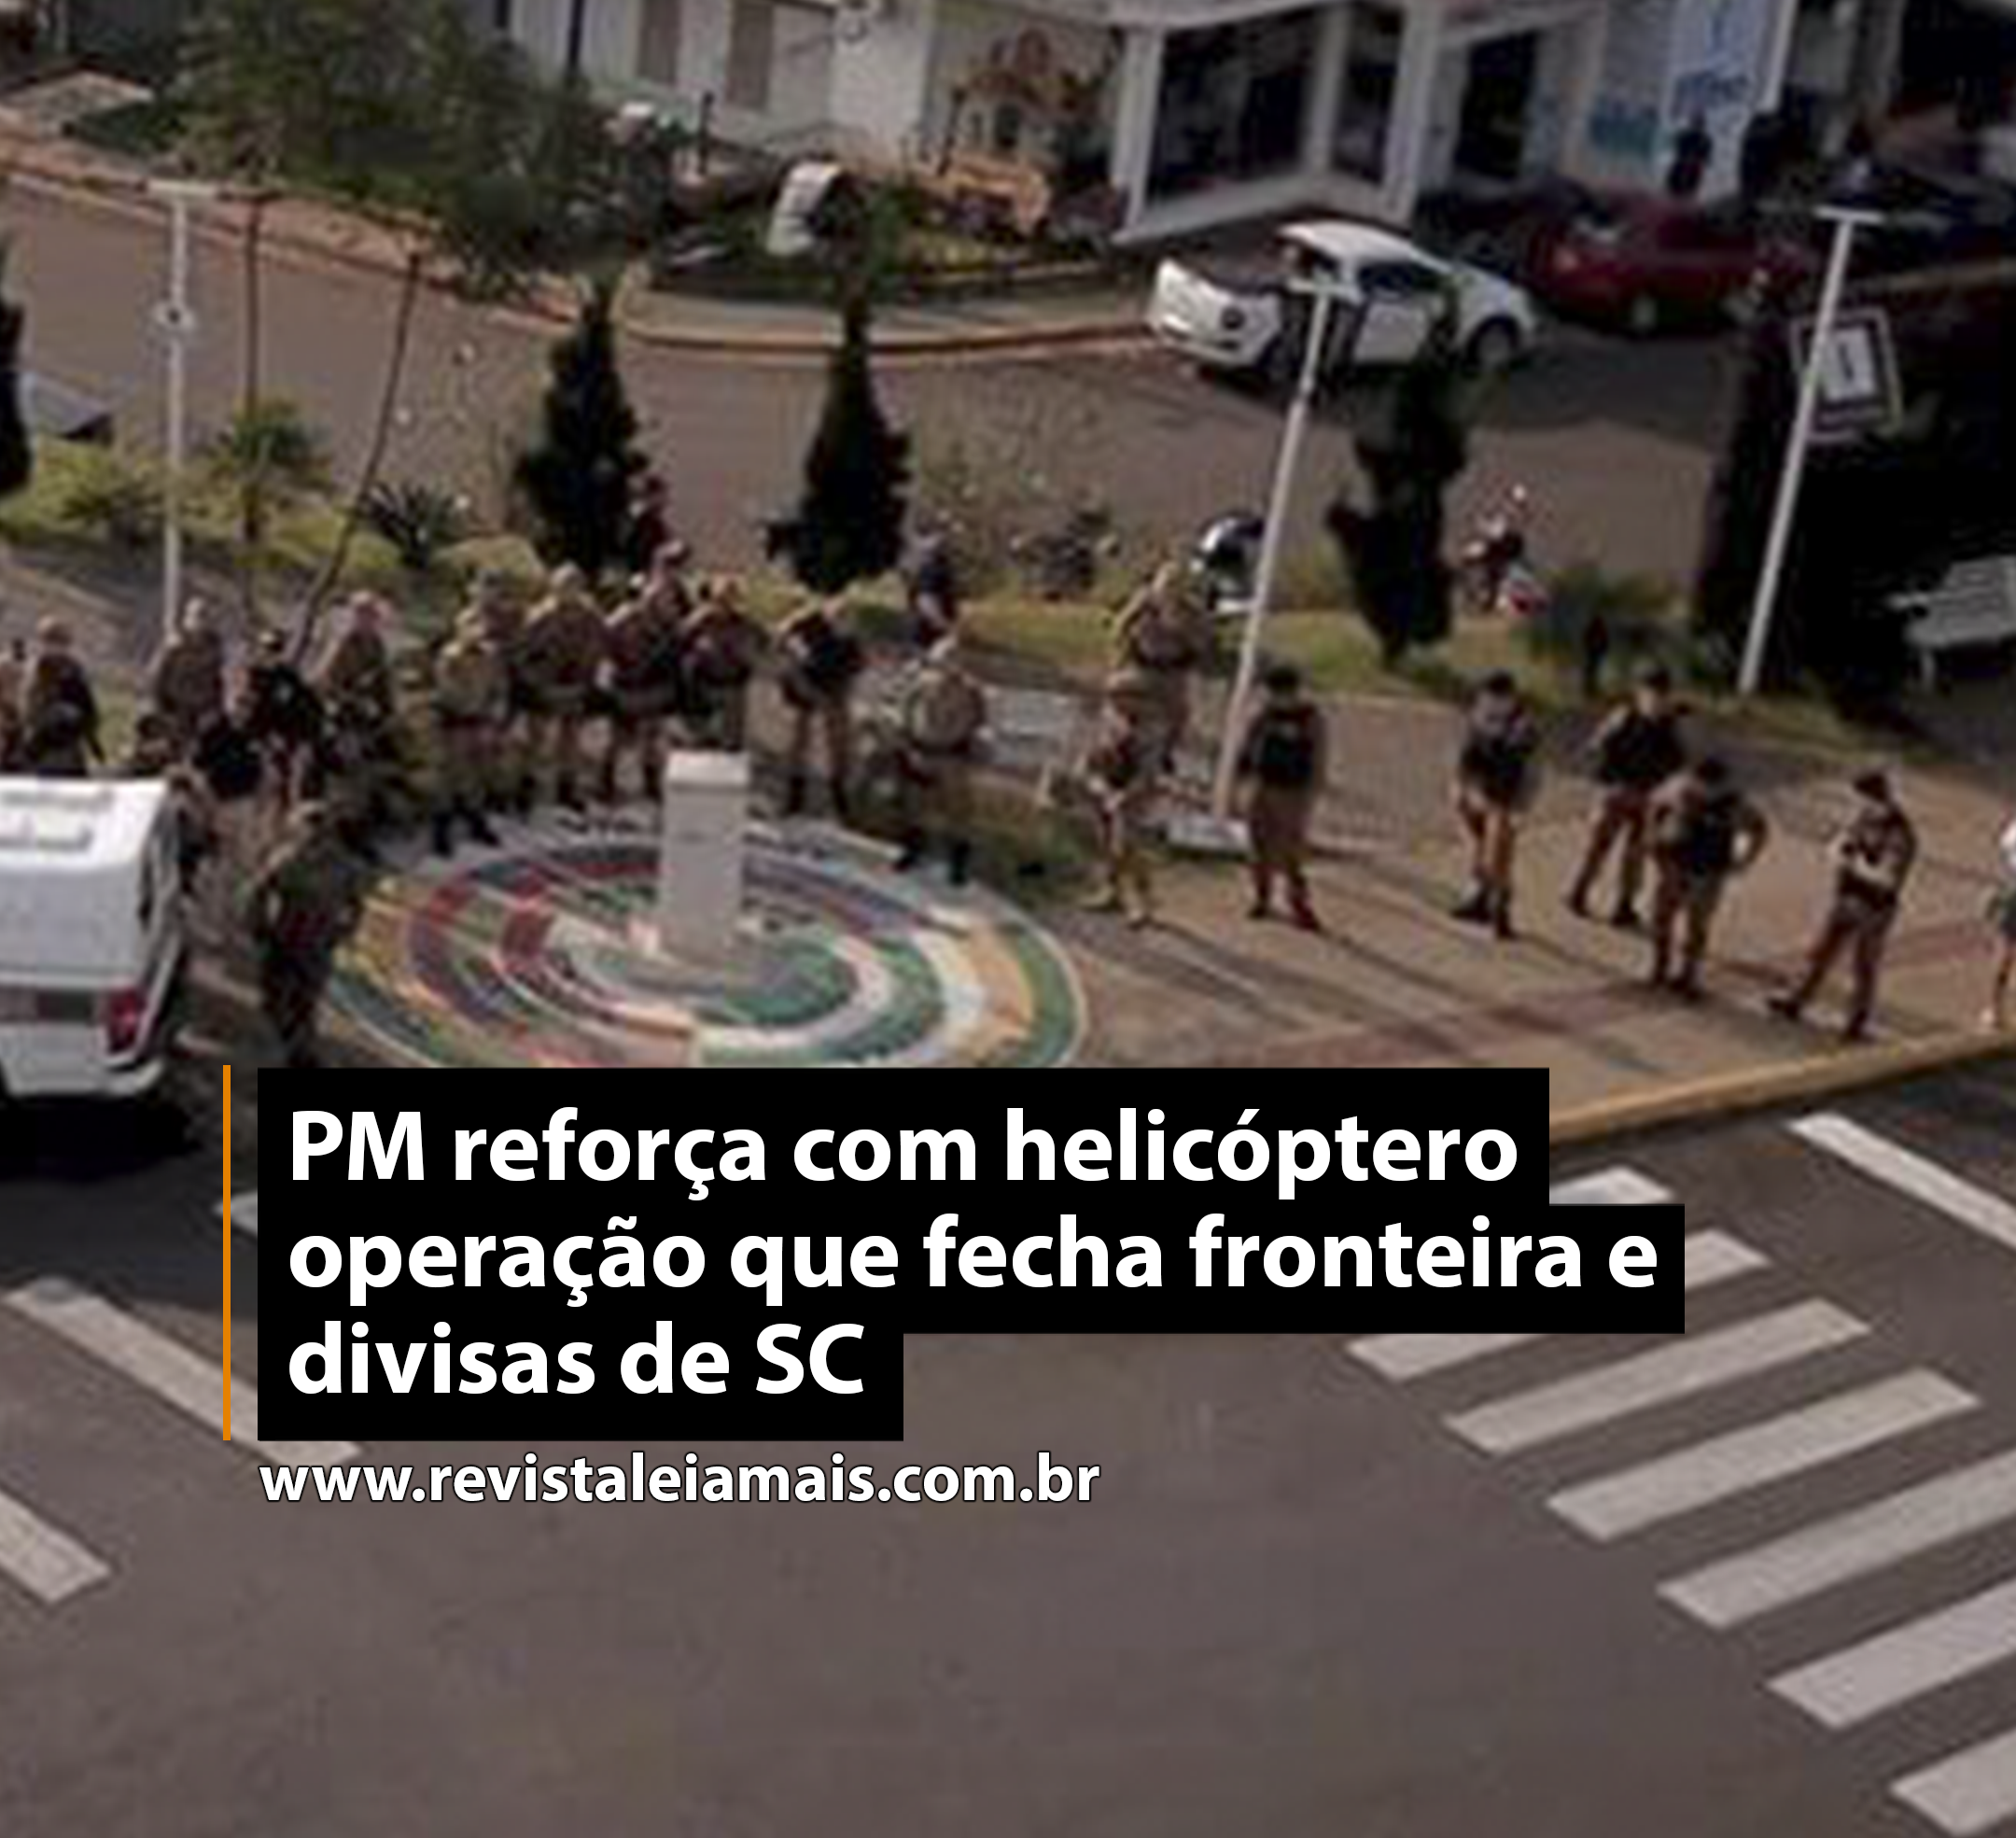 PM reforça com helicóptero operação que fecha fronteira e divisas de SC